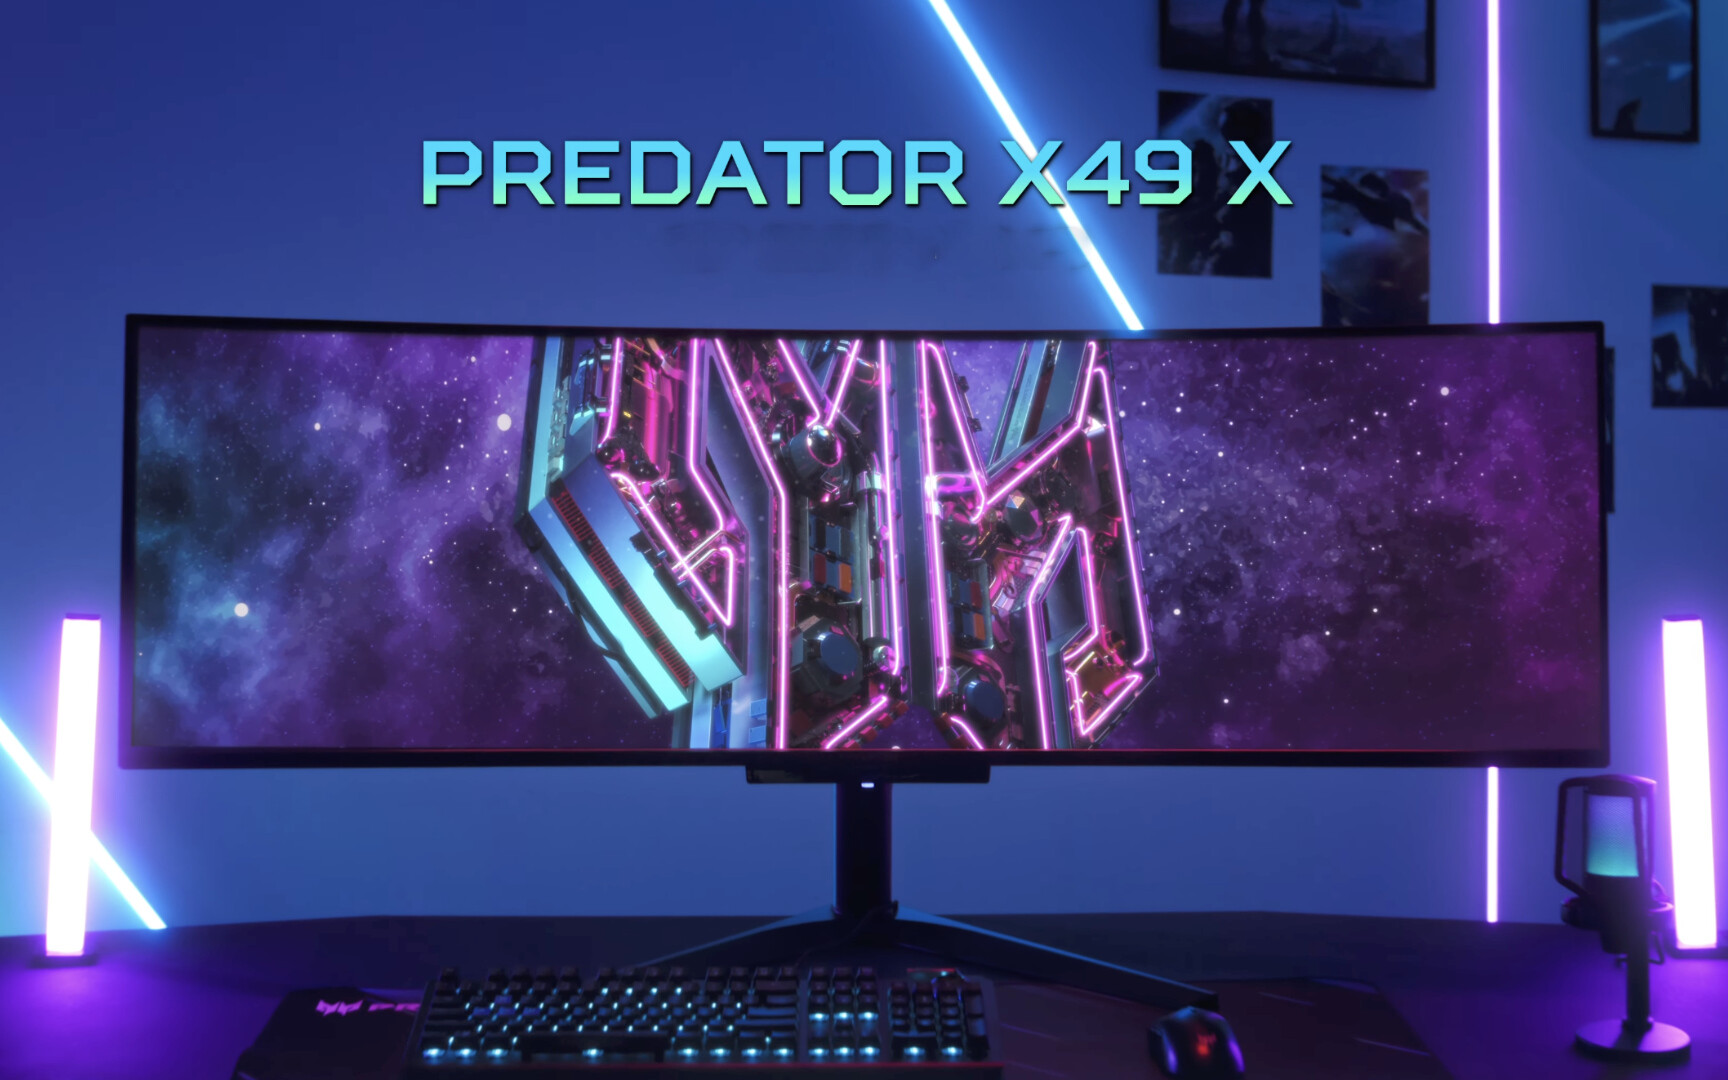 Predator X49 X